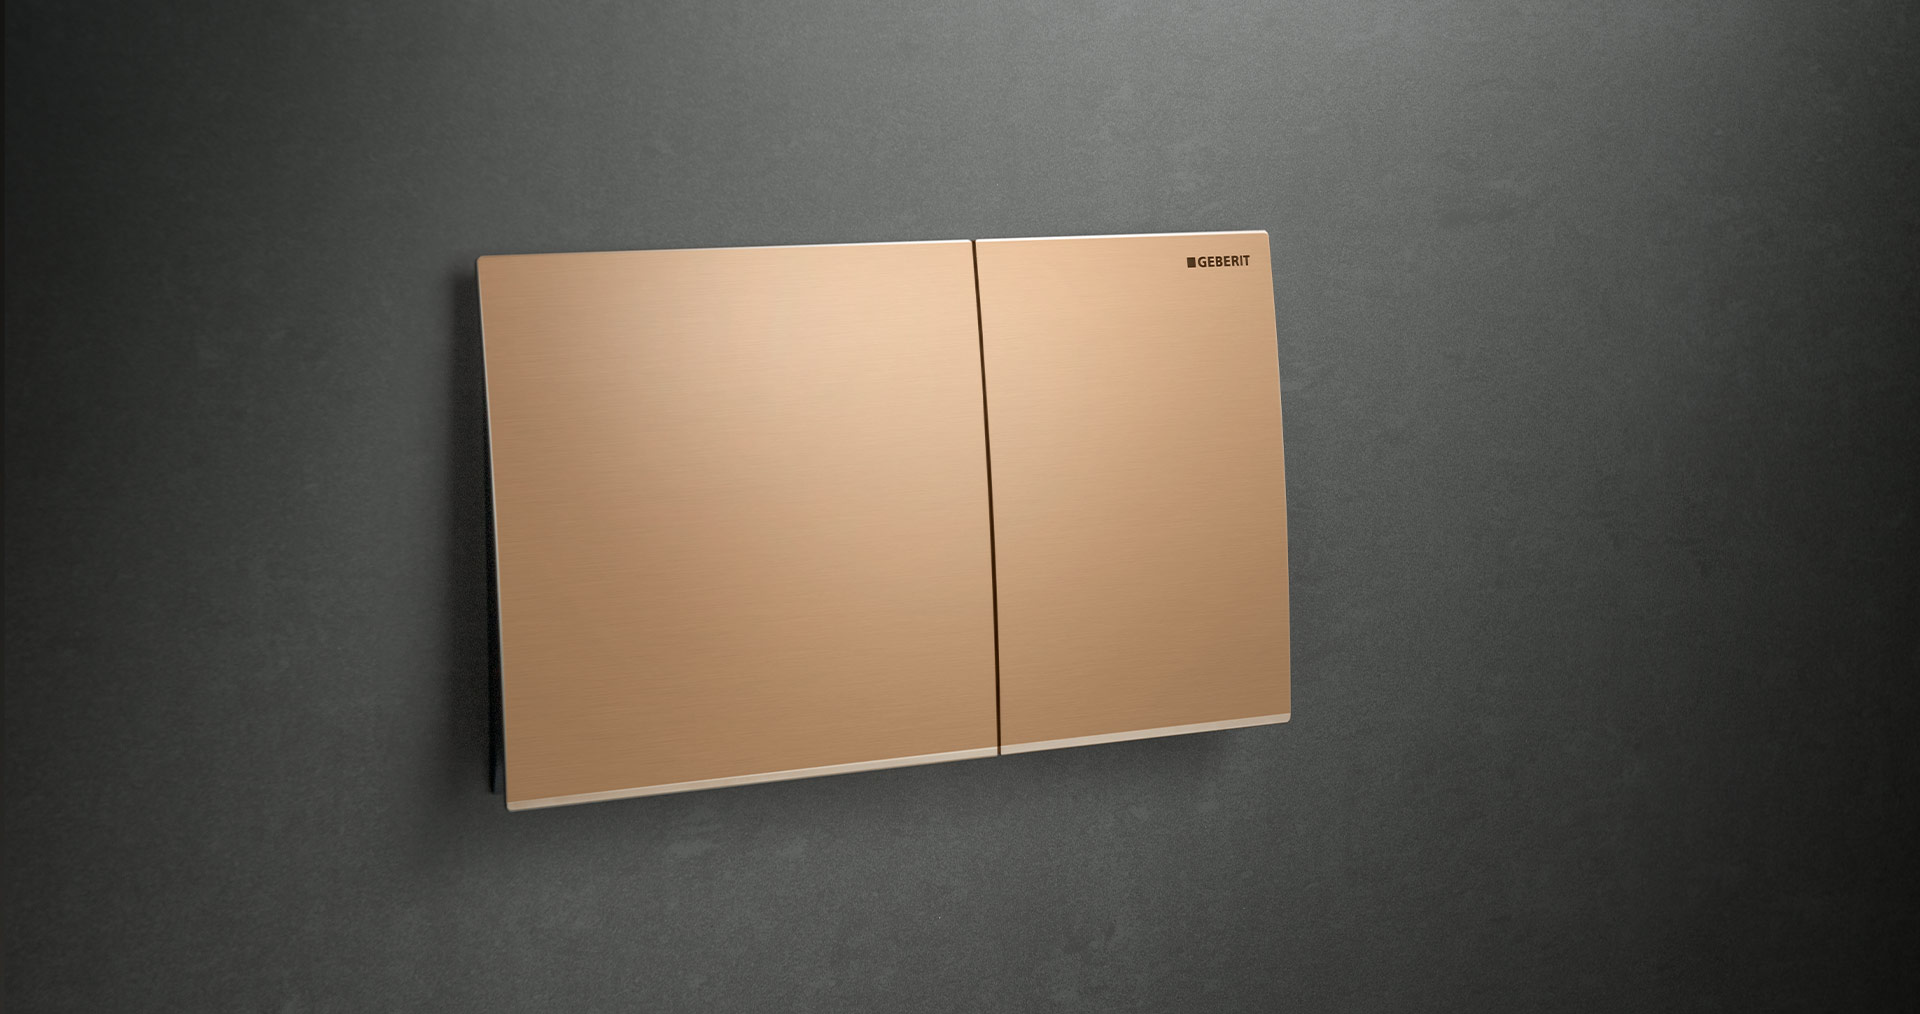 Betätigungsplatte für WC-Spülung von Geberit, Modell Sigma70, in rahmenlosem Design und bronzefarben, anscheinend schwebend montiert auf dunklem Hintergrund